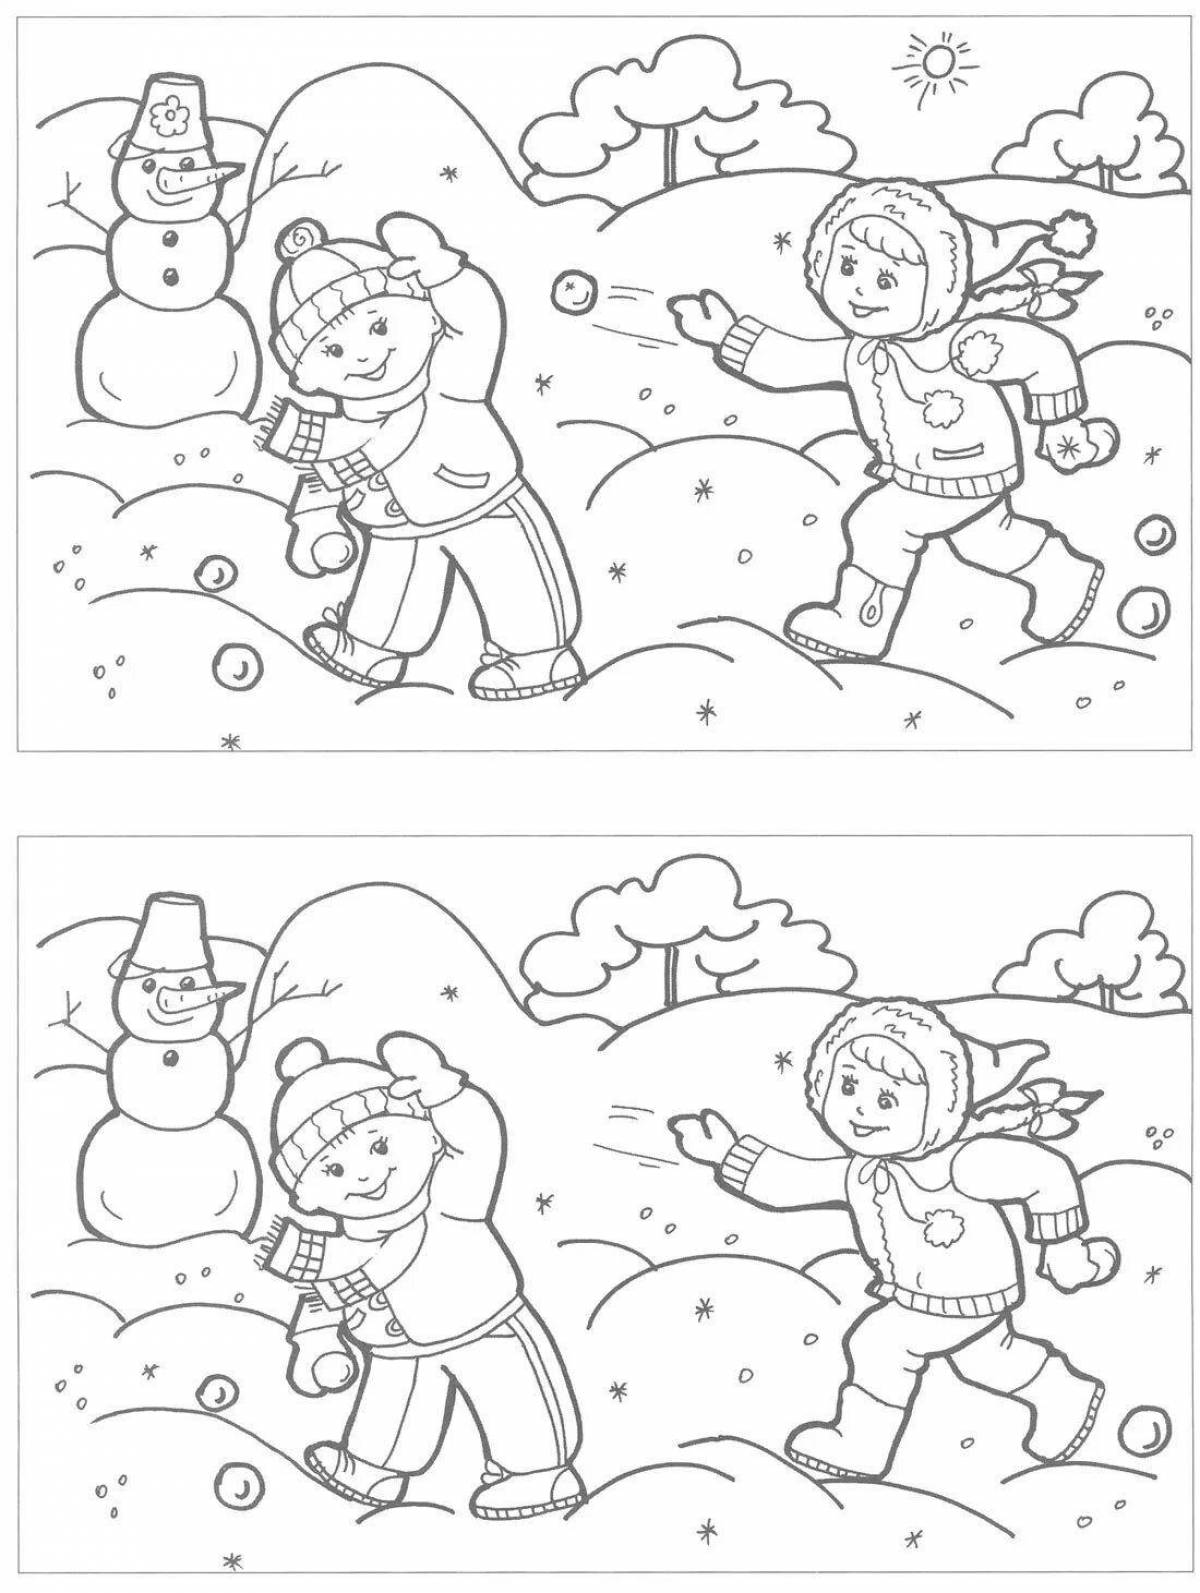 Fun winter games coloring book